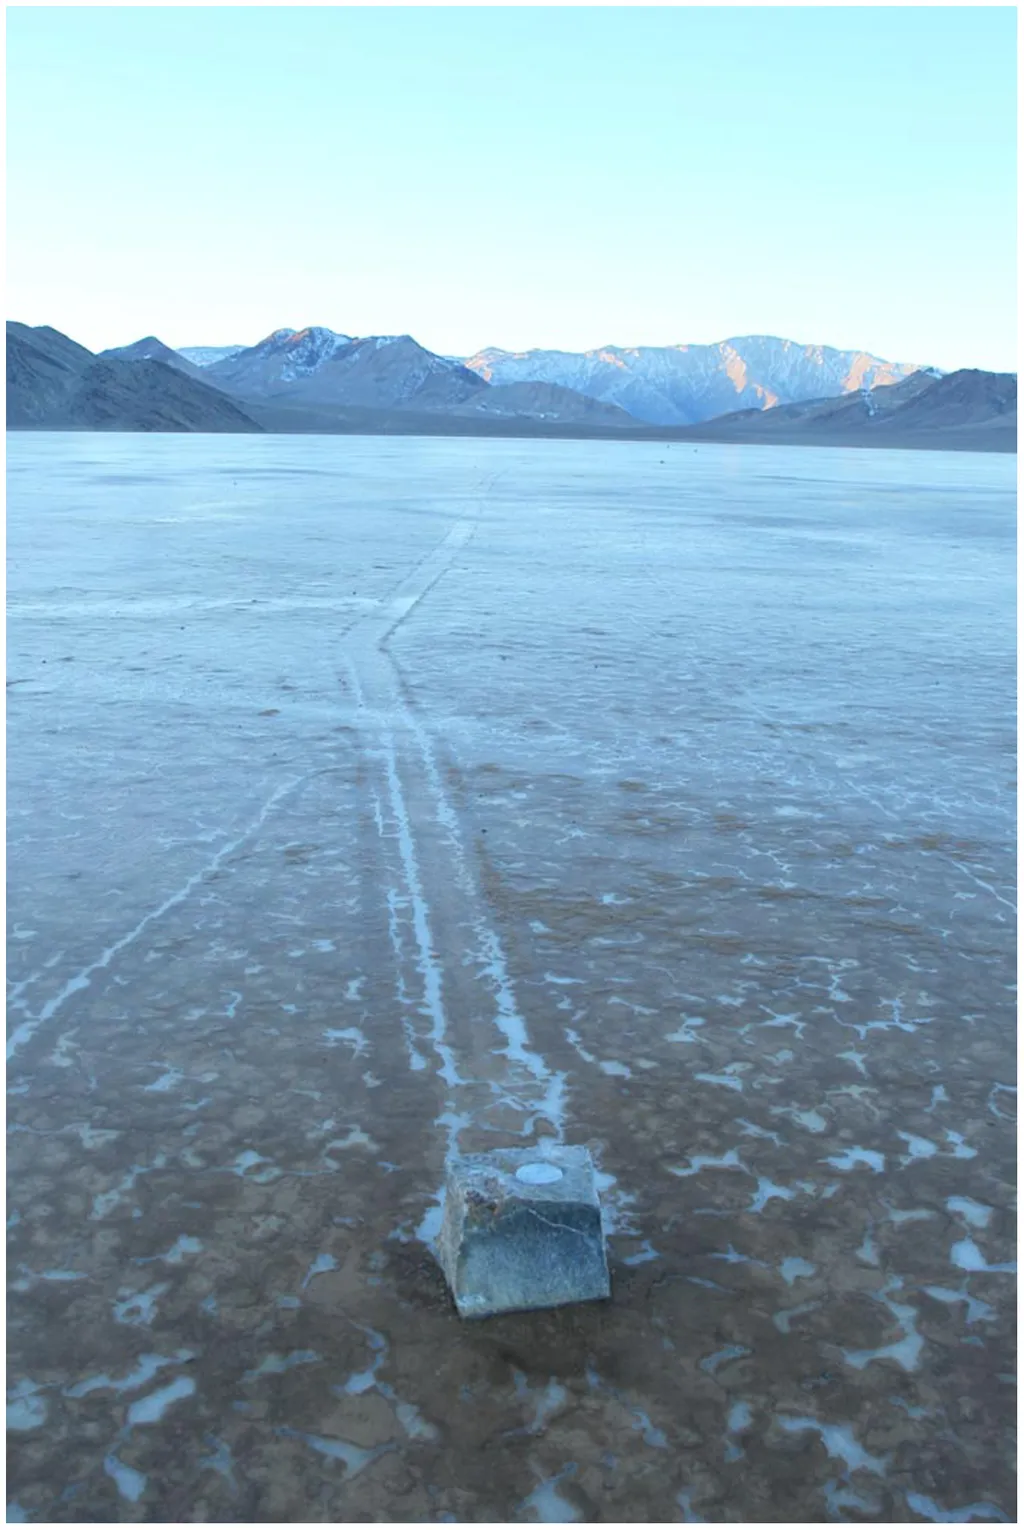 Uma das pedras dos pesquisadores munida de um rastreador e sua trilha sobre a superfície ainda congelada (Imagem: Reprodução/Richard Norris at al.)